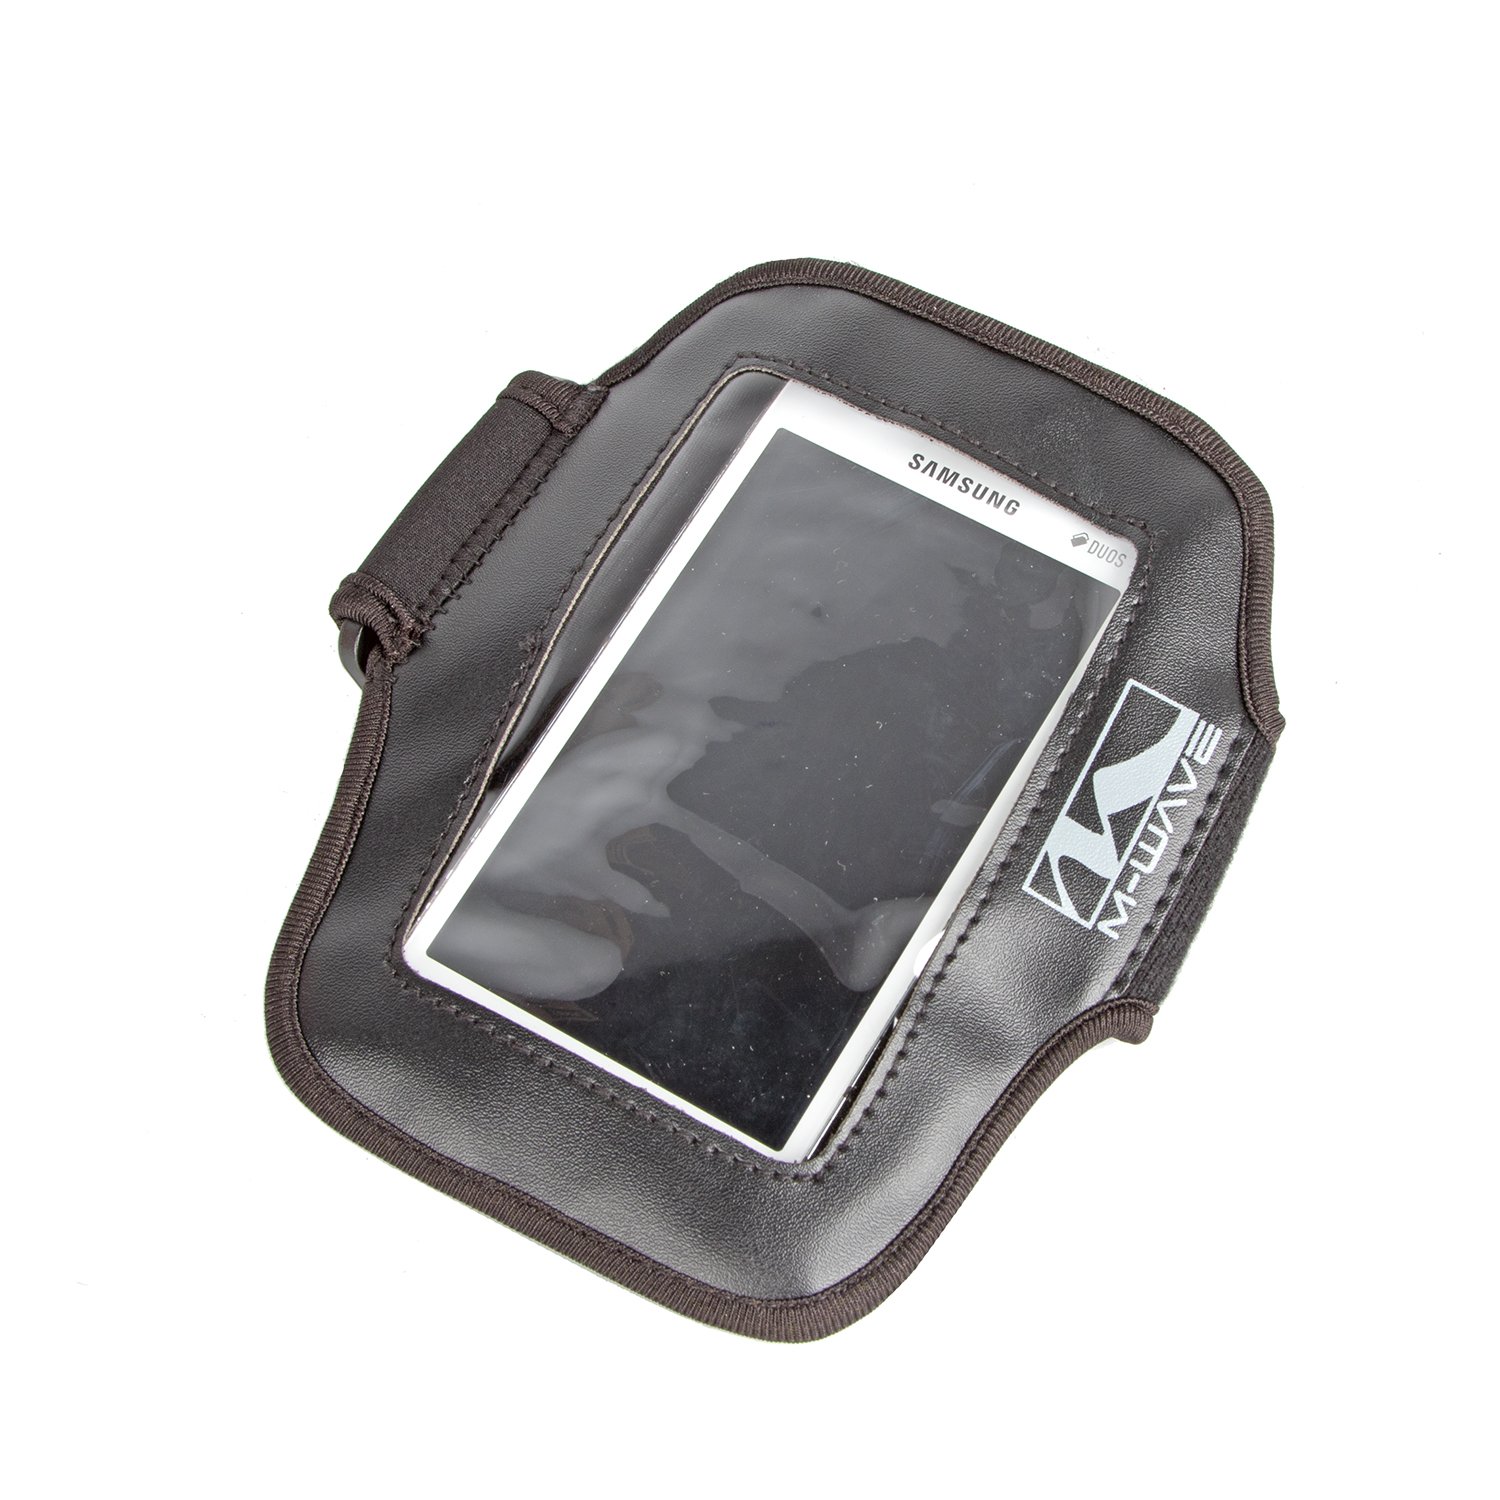 Чехол M-WAVE ARM BAG, для смартфона, на руку, 165х110 мм, неопрен, черная, 5-122381 чехол m wave arm bag для смартфона на руку 165х110 мм неопрен черная 5 122381